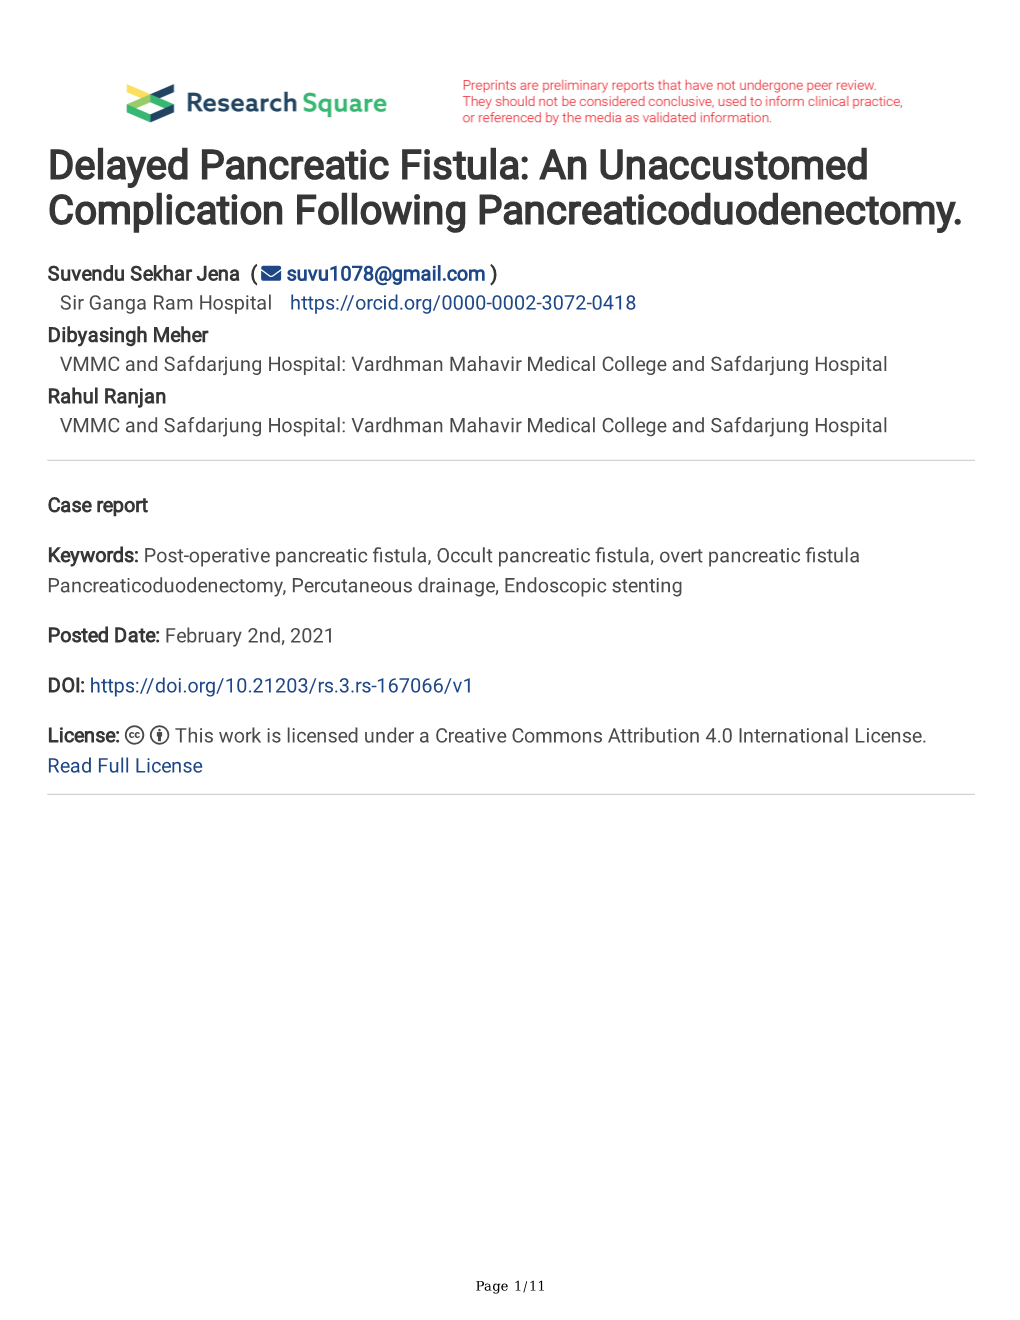 Delayed Pancreatic Fistula: an Unaccustomed Complication Following Pancreaticoduodenectomy